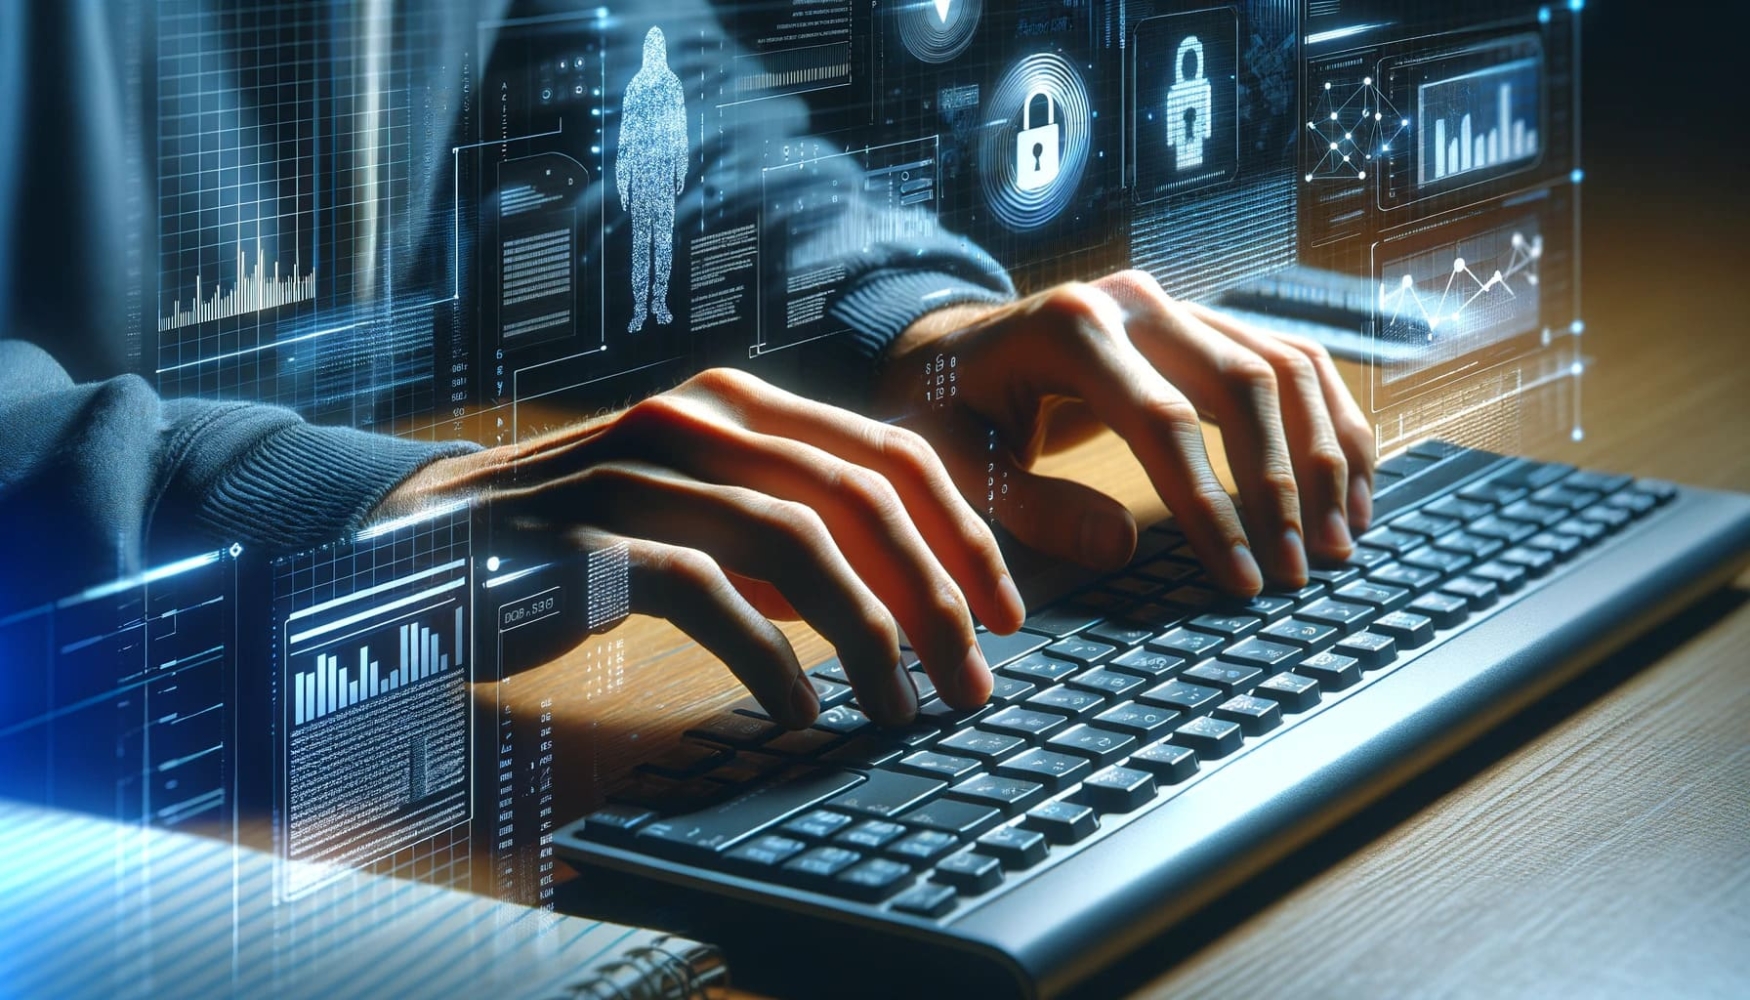 Image de synthèse d'un homme tapant sur un clavier, avec un arrière-plan futuriste derrière lui et une image numérique d'une main sur le clavier